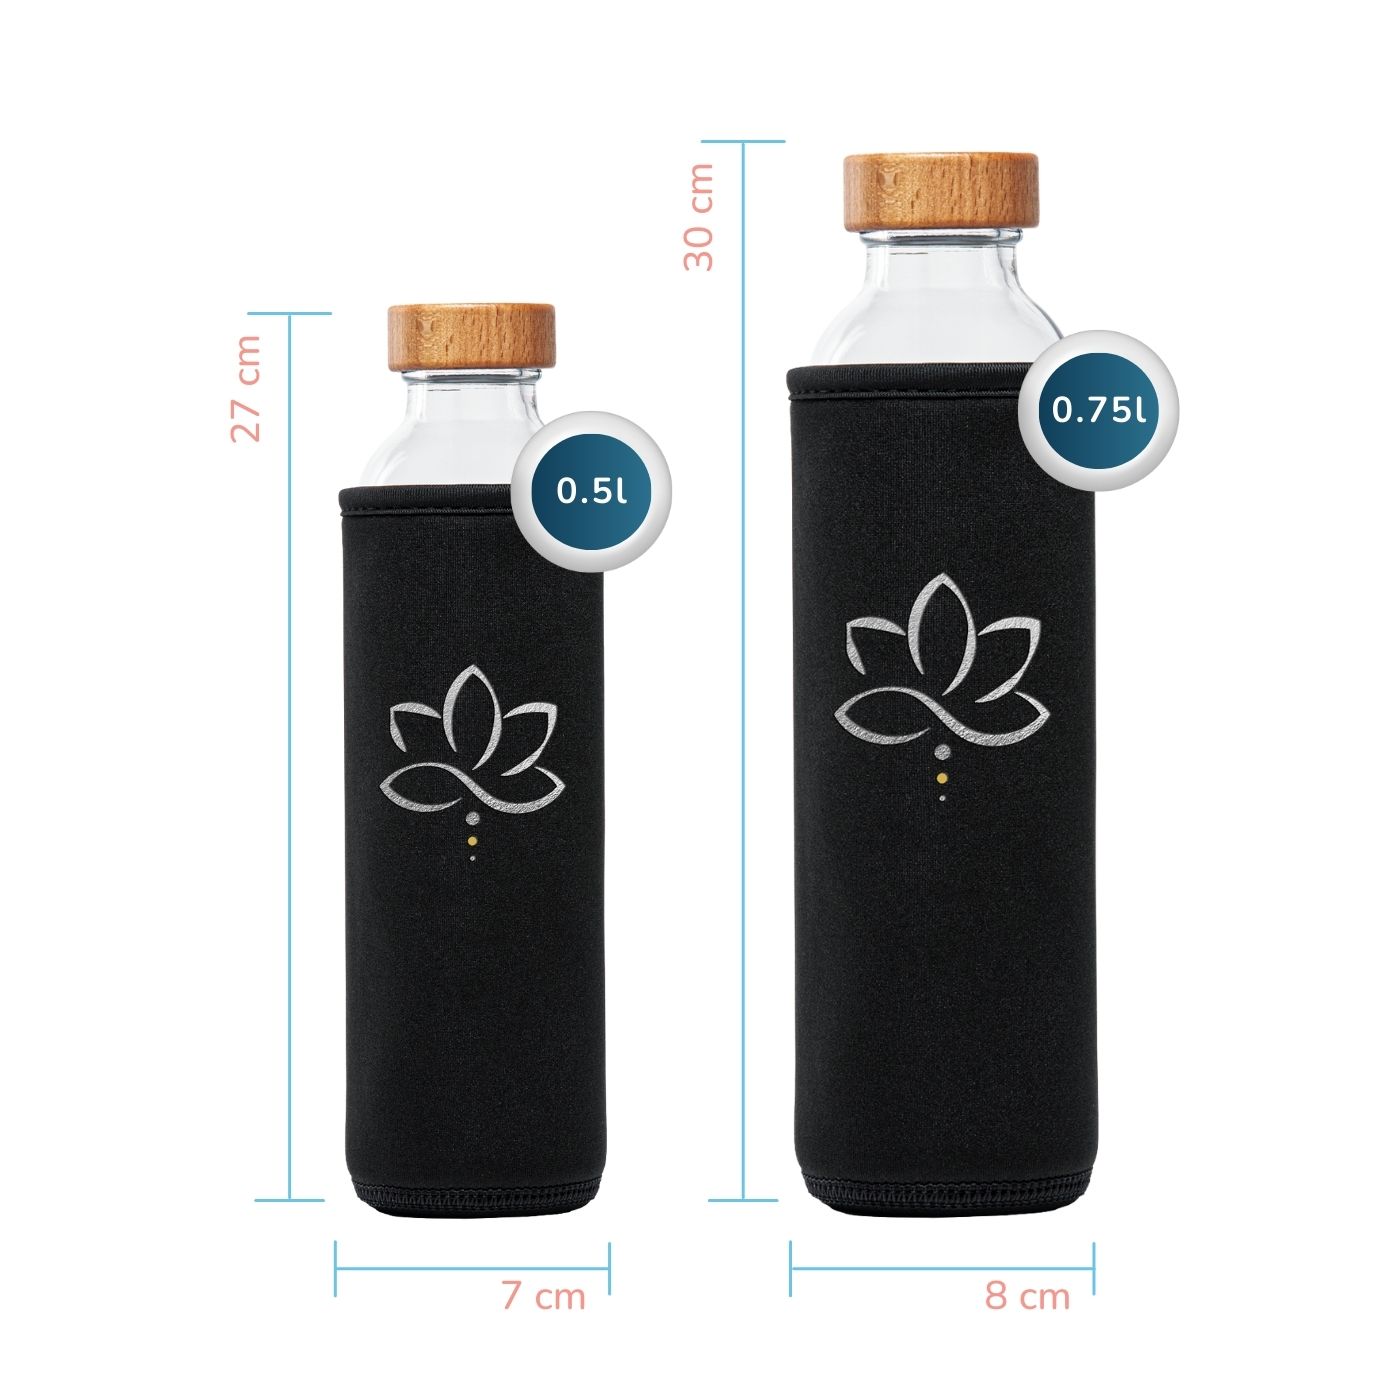 tamaños de la botella de agua de cristal Flaska con funda protectora de neopreno y diseño de yoga Silverlotus